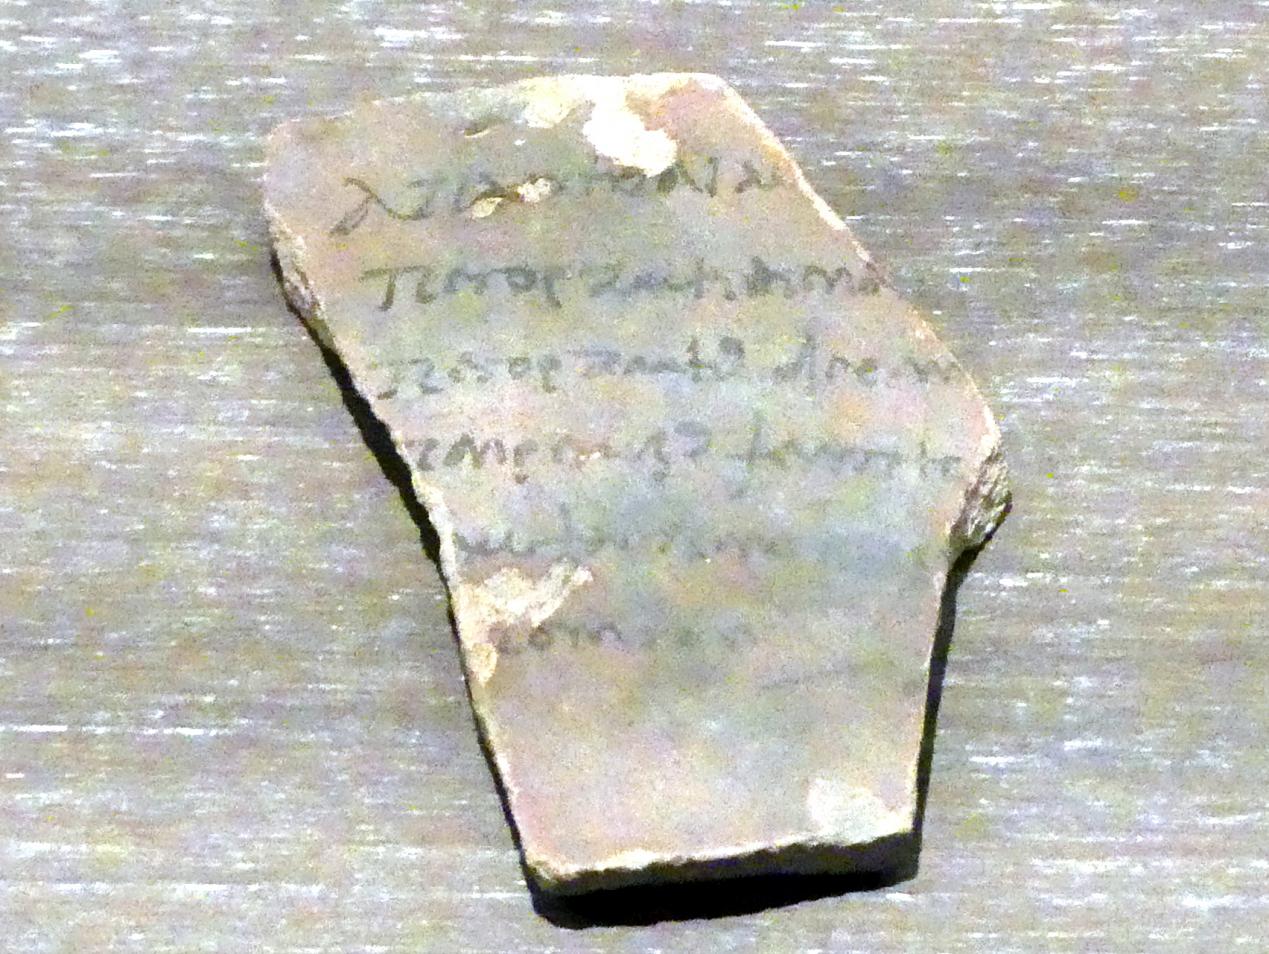 Ostrakon (Scherbe) mit einer Liste von Steuereintreibern in griechischer Sprache, Römische Kaiserzeit, 27 v. Chr. - 54 n. Chr., 200, Bild 1/2